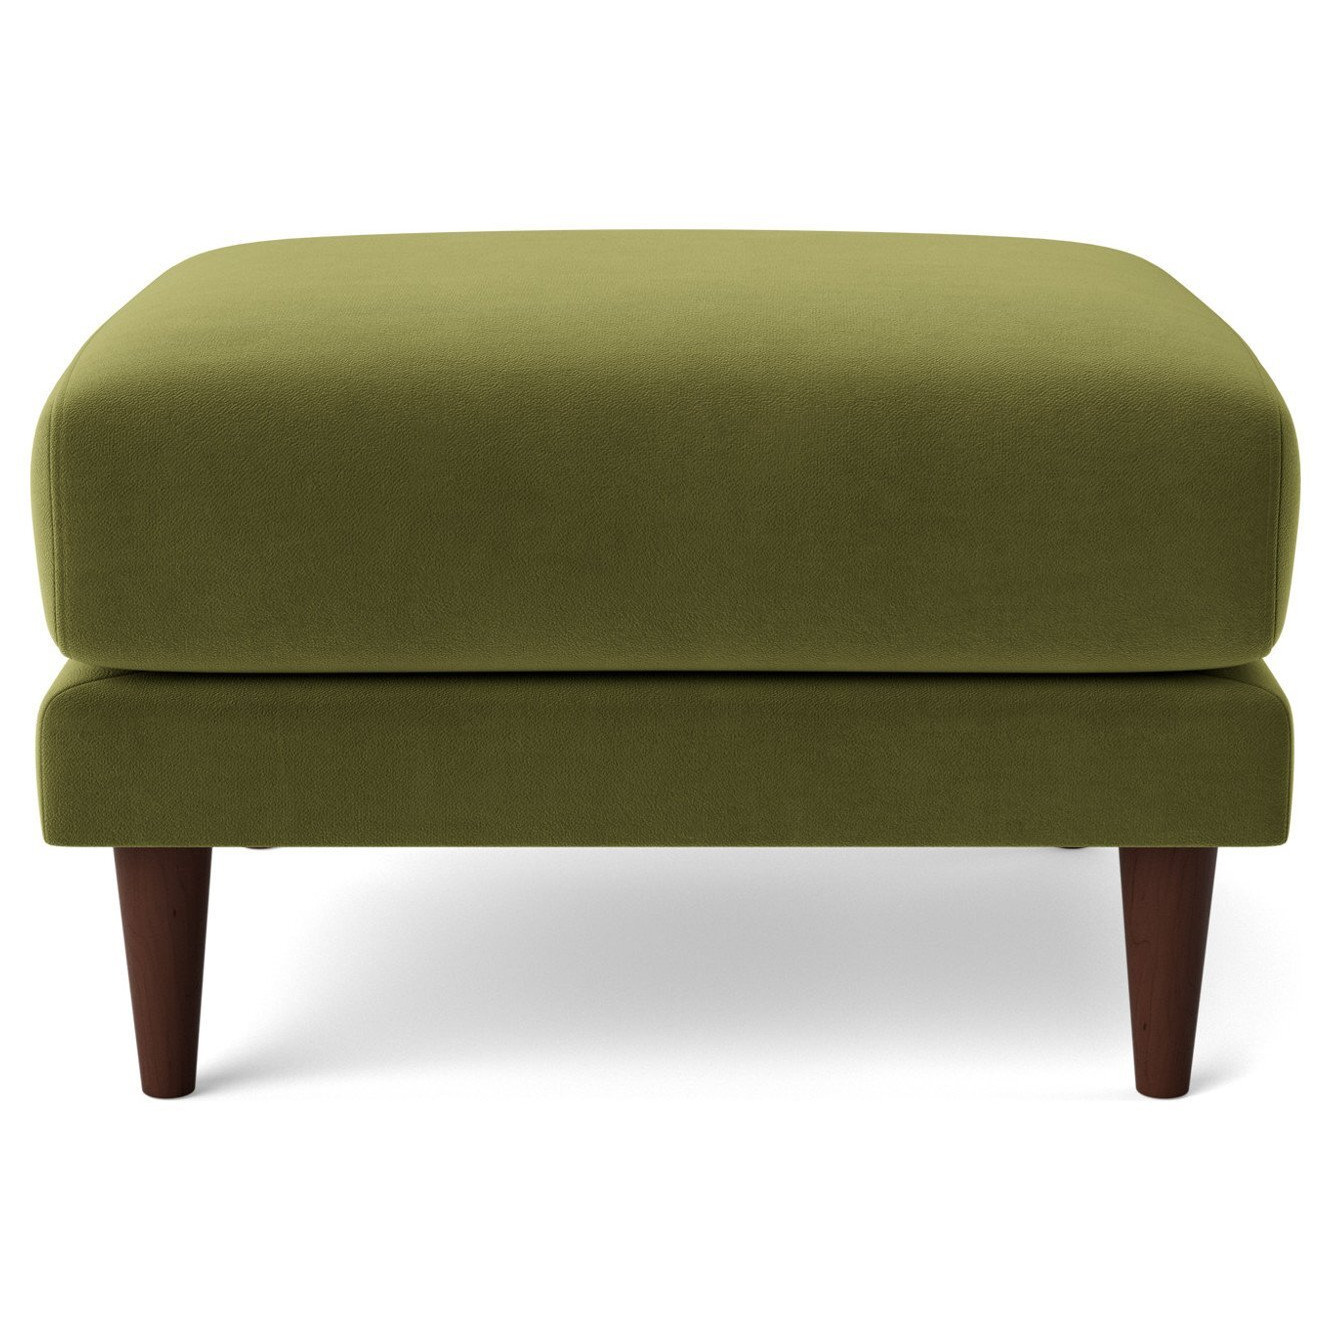 Swoon Turin Velvet Ottoman Footstool - Fern Green - image 1